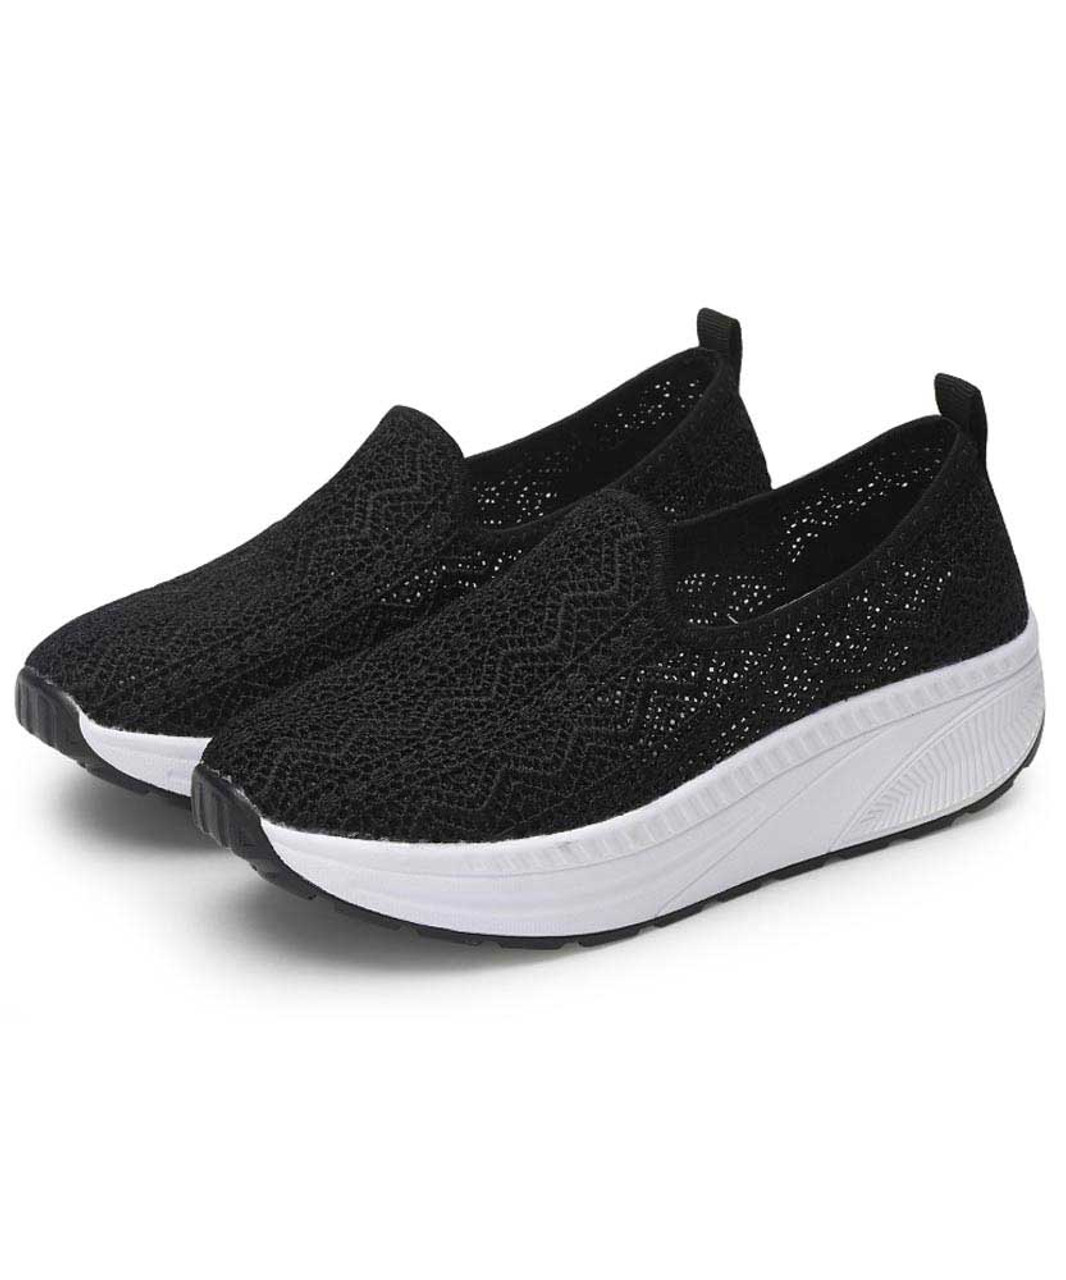 Black flyknit texture slip on rocker bottom shoe sneaker | Womens ...